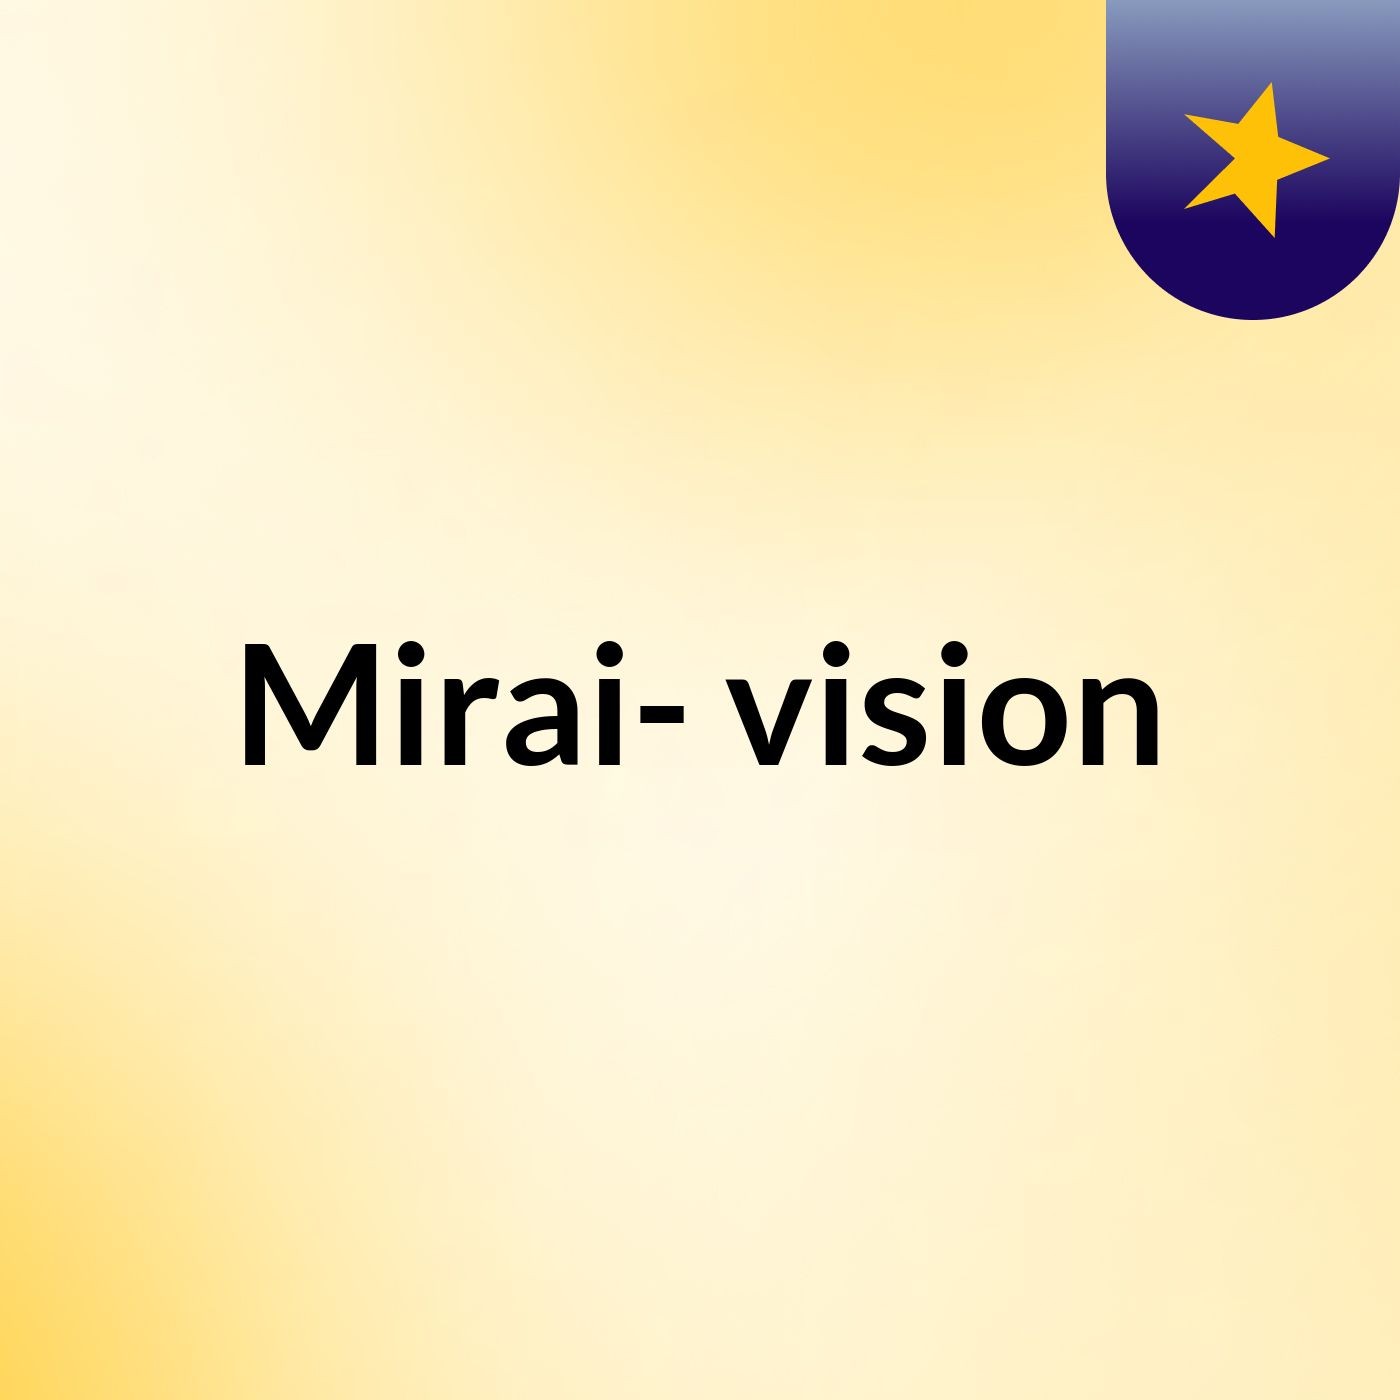 Mirai- vision